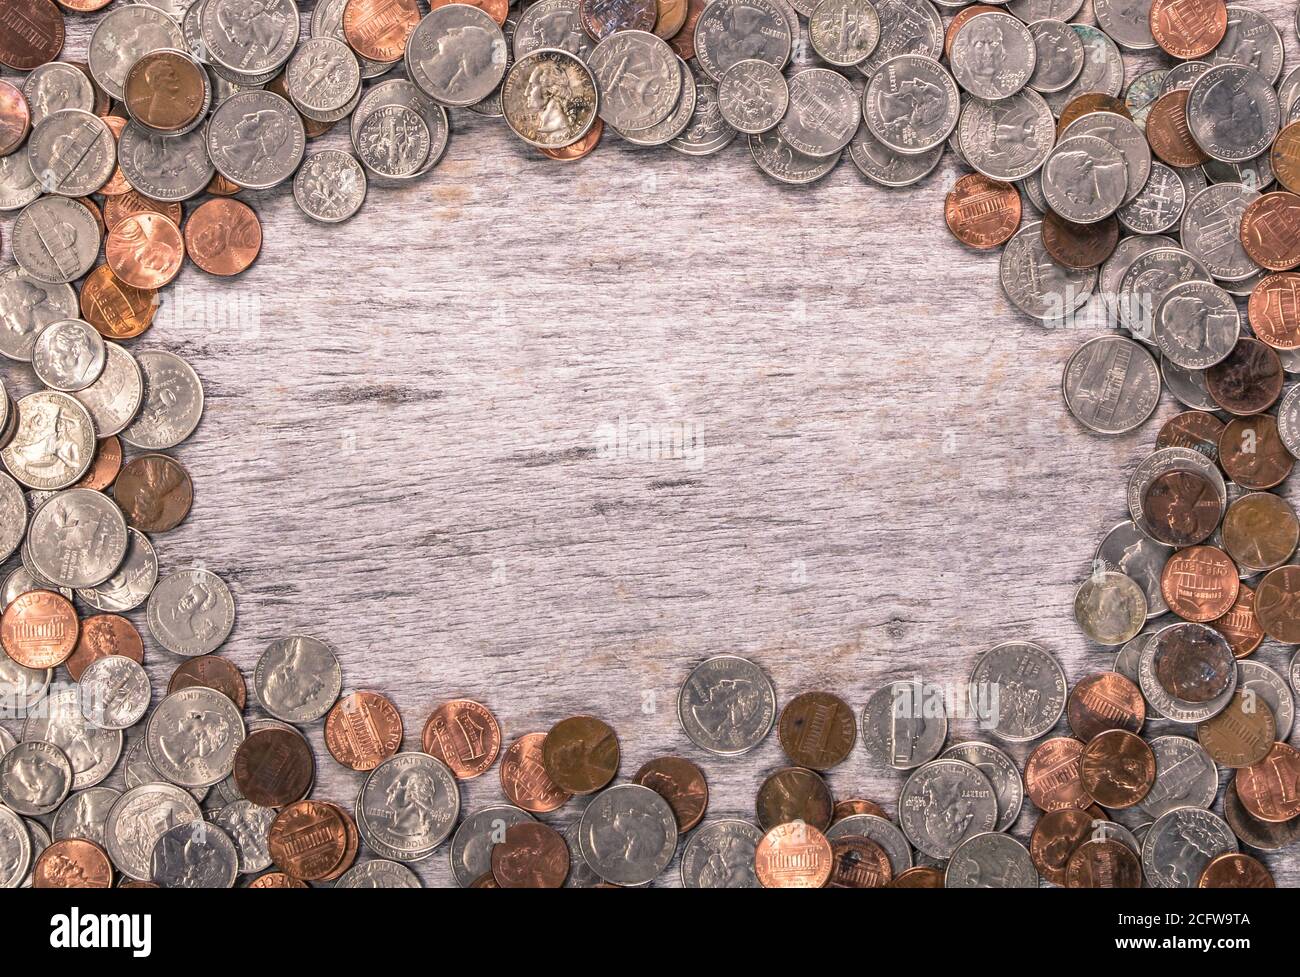 Arrière-plan en bois ancien avec de vieilles pièces de monnaie dispersées pour former le cadre. Texture de l'arrière-plan avec modification non imposée Banque D'Images